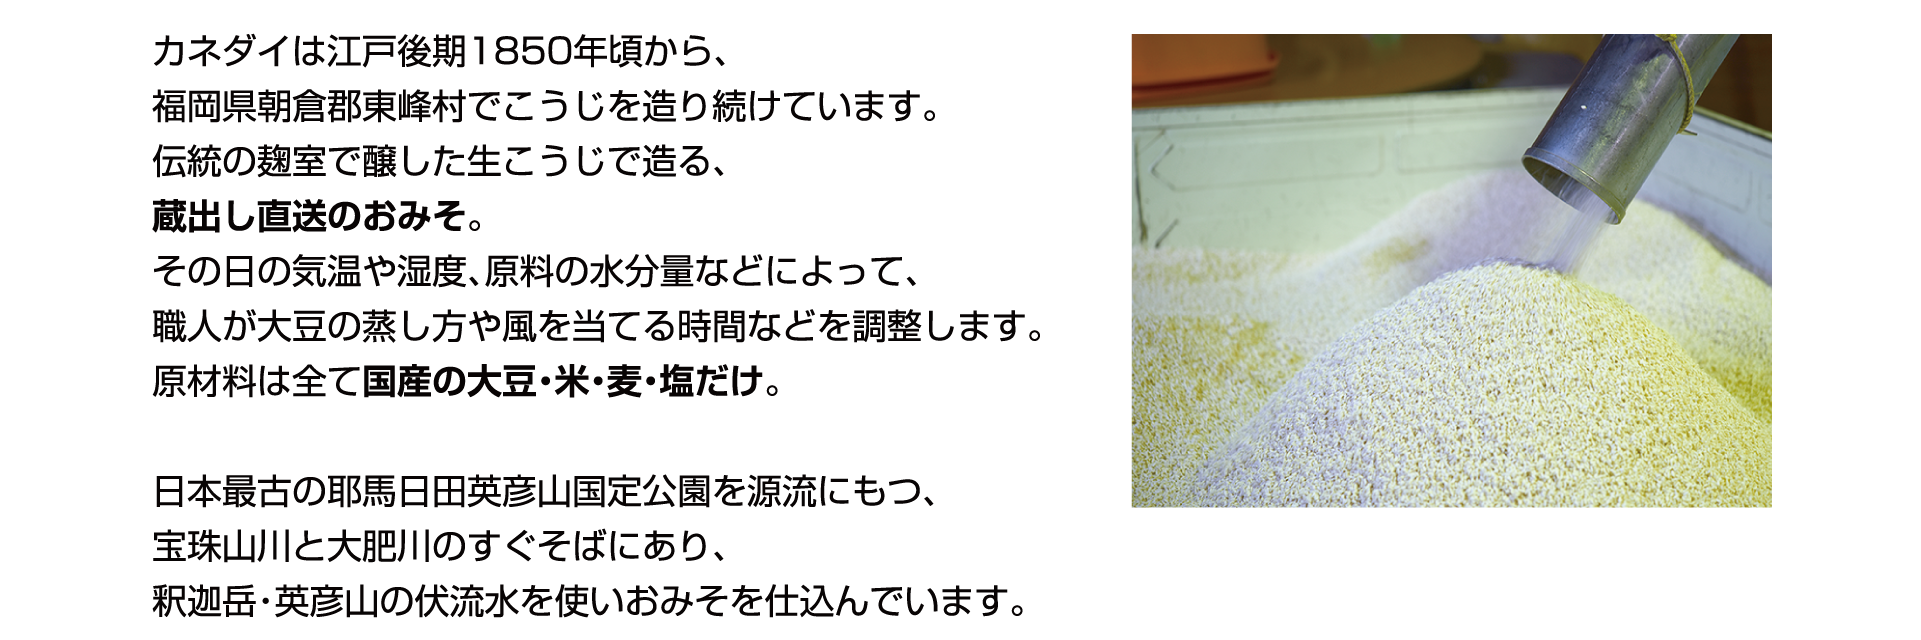 カネダイは江戸後期1850年頃から、福岡県朝倉郡東峰村でこうじを造り続けています。伝統の麹室で醸した生こうじで造る、蔵出し直送のおみそ。その日の気温や湿度、原料の水分量などによって、職人が大豆の蒸し方や風を当てる時間などを調整します。原料は全て国産の大豆・米・麦・塩だけ。日本最古の耶馬日田英彦山国定公園を源流に持つ、宝珠山川と大肥川のすぐそばにあり、釈迦岳・英彦山の伏流水を使いおみそを仕込んでいます。